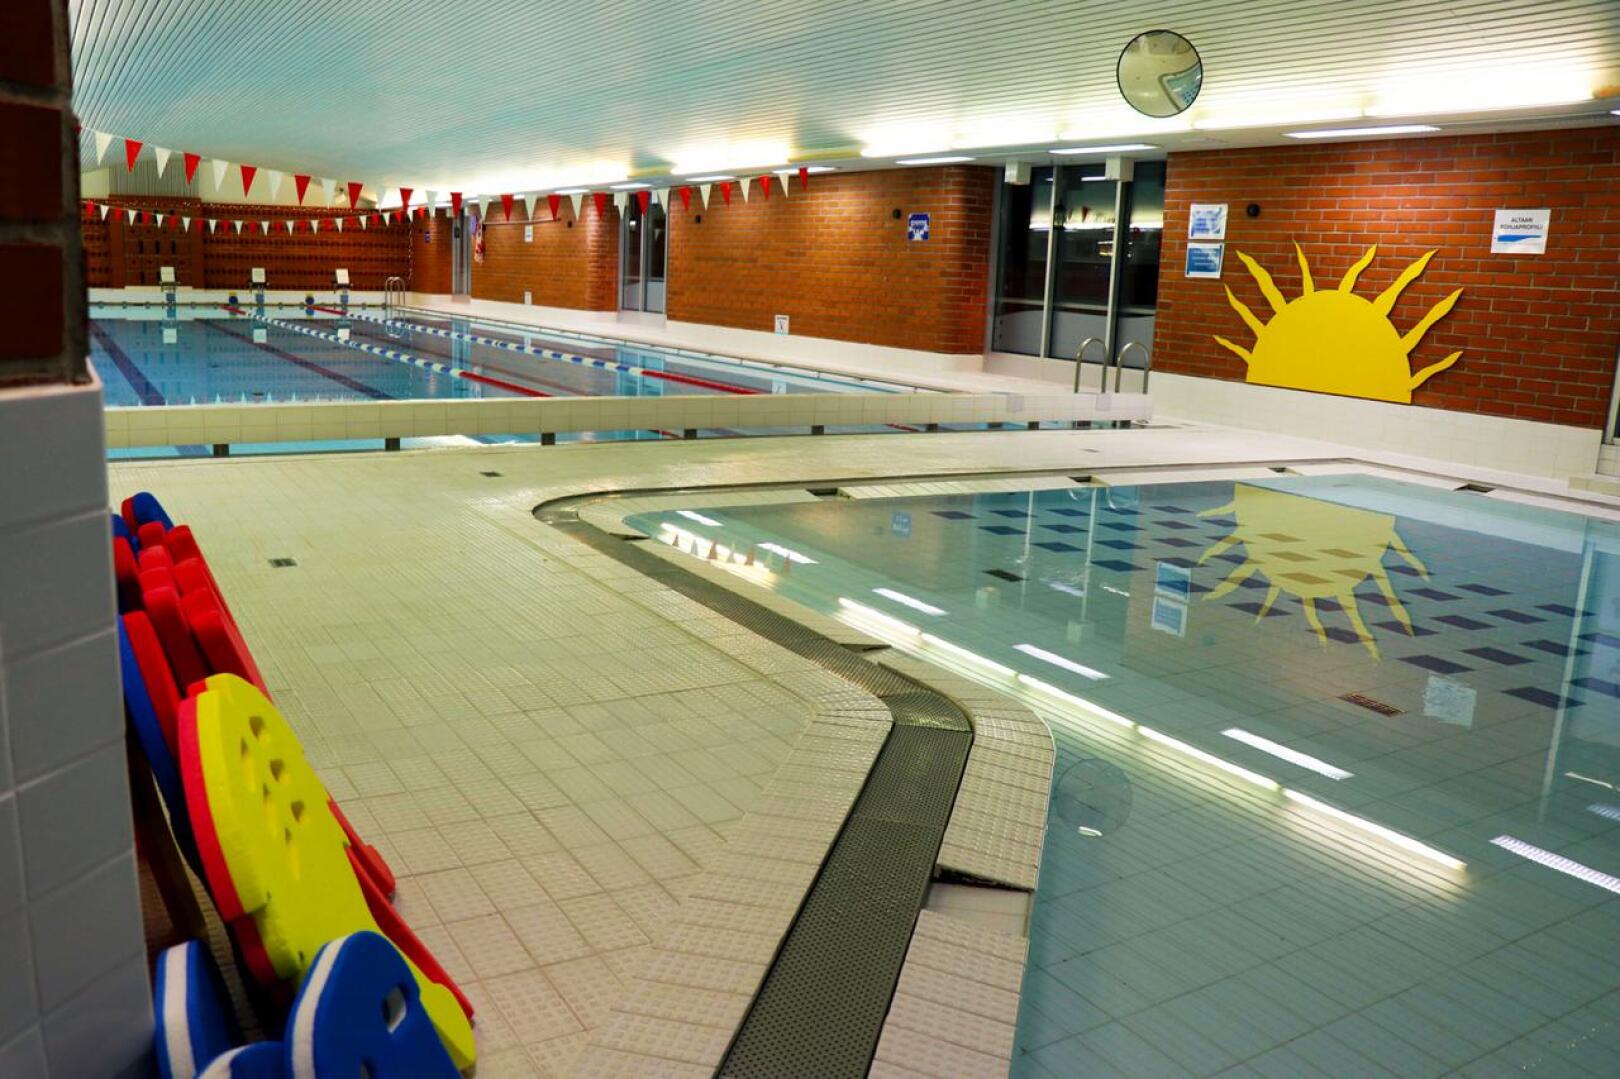 Vetelin liikuntakeskuksen uimahalli avautuu vasta 31. elokuuta. Käytännössä tämä tarkoittaa muun muassa sitä, että lasten uimakoulut jäävät hallissa tänä kesänä järjestämättä.